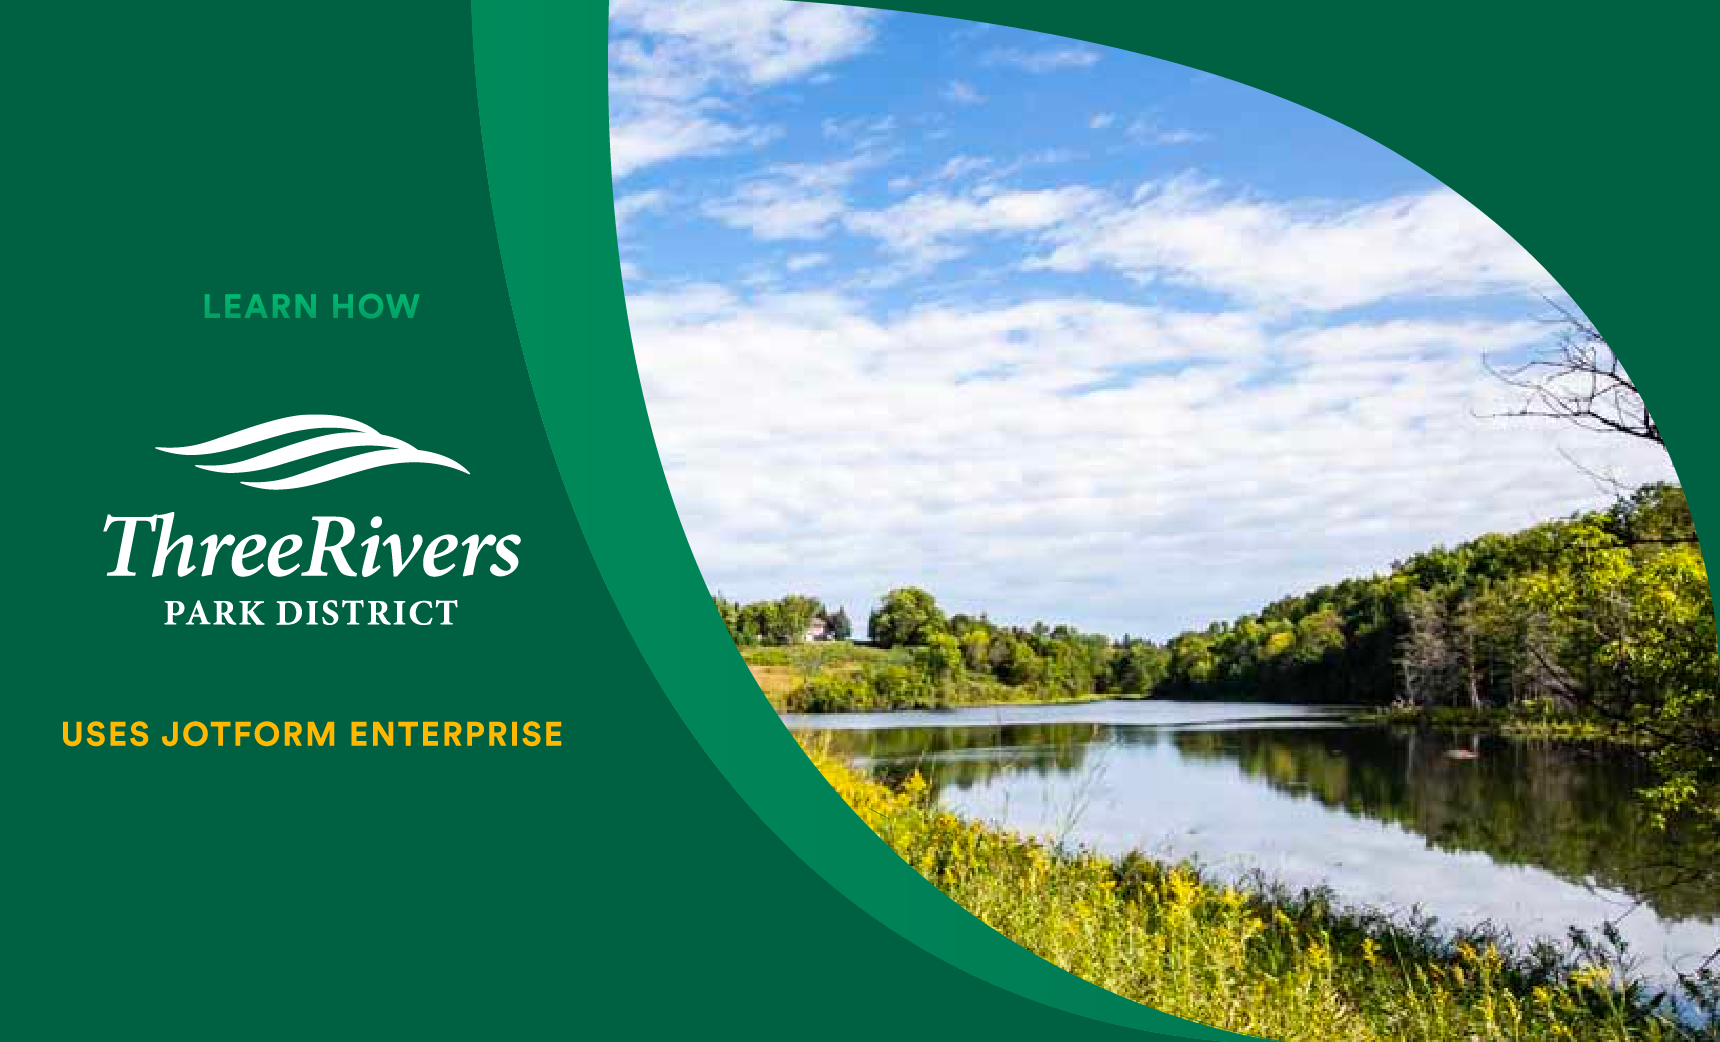 Three Rivers Park District manages 27,000 acres with Jotform Enterprise